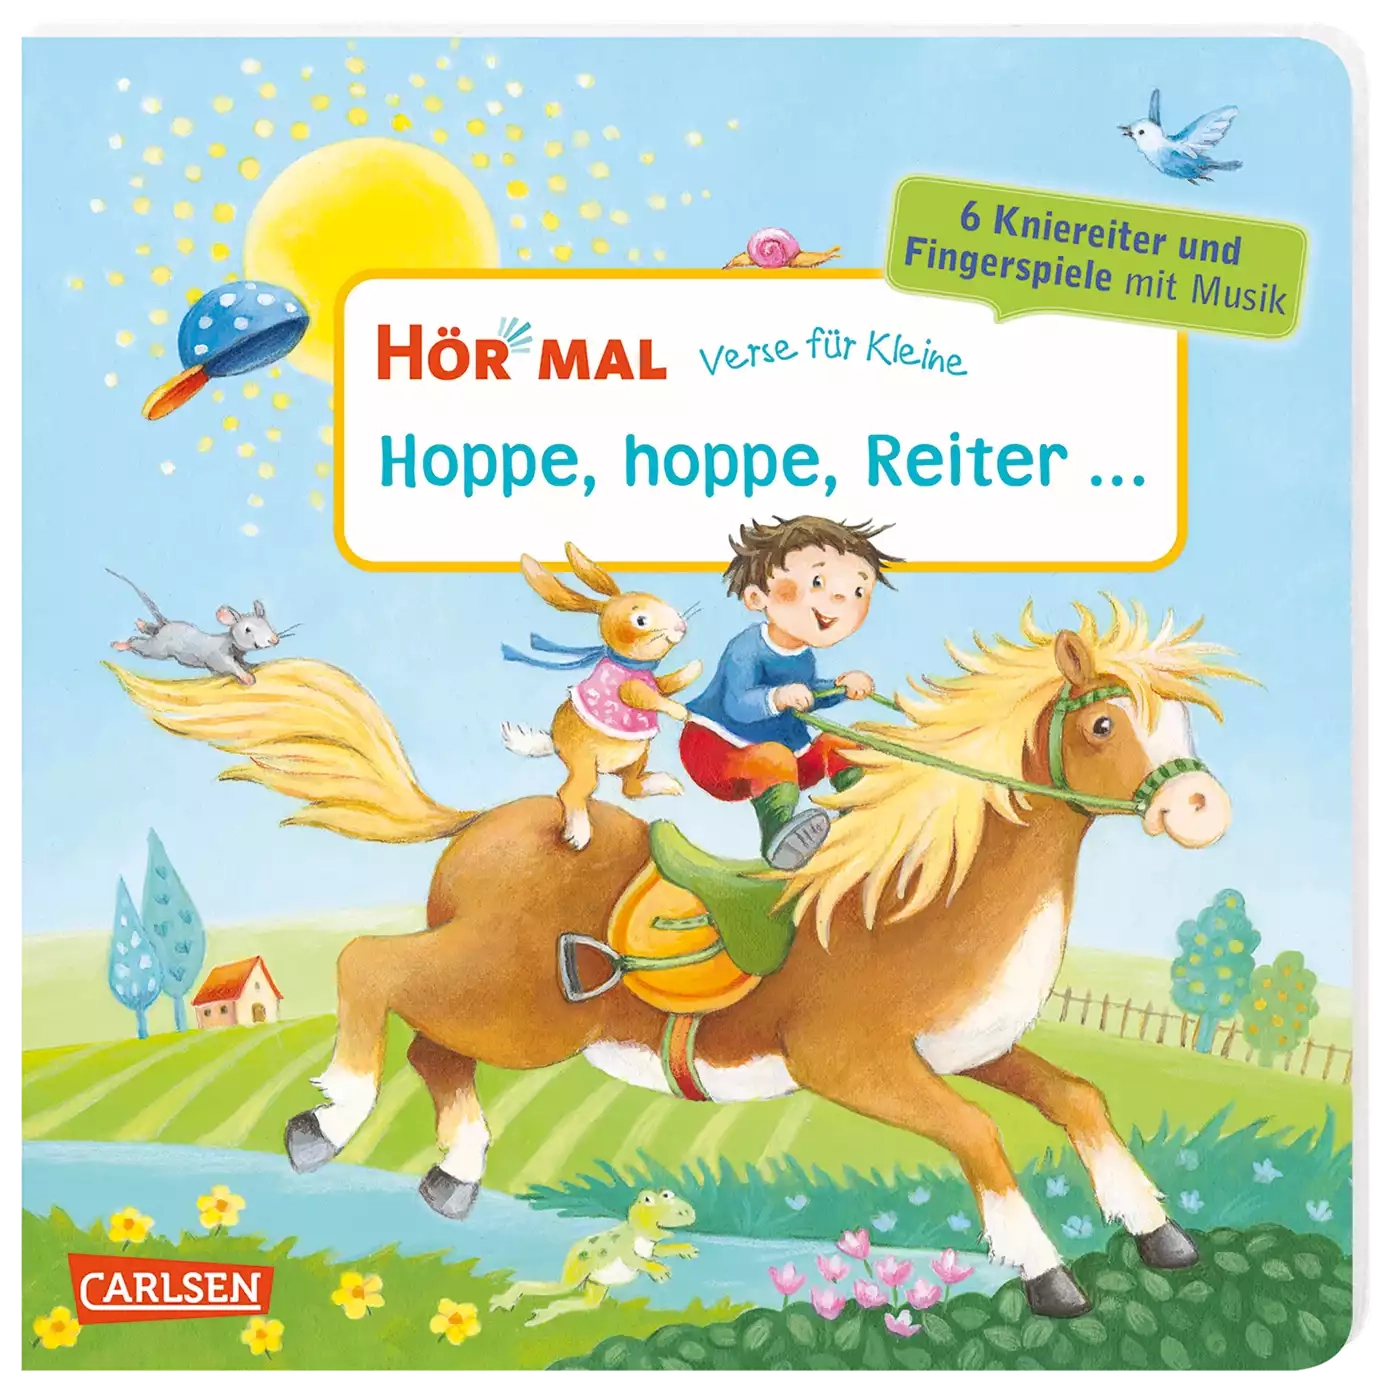 Hör mal: Verse für Kleine: Hoppe, hoppe, Reiter ... CARLSEN 2000579973109 3